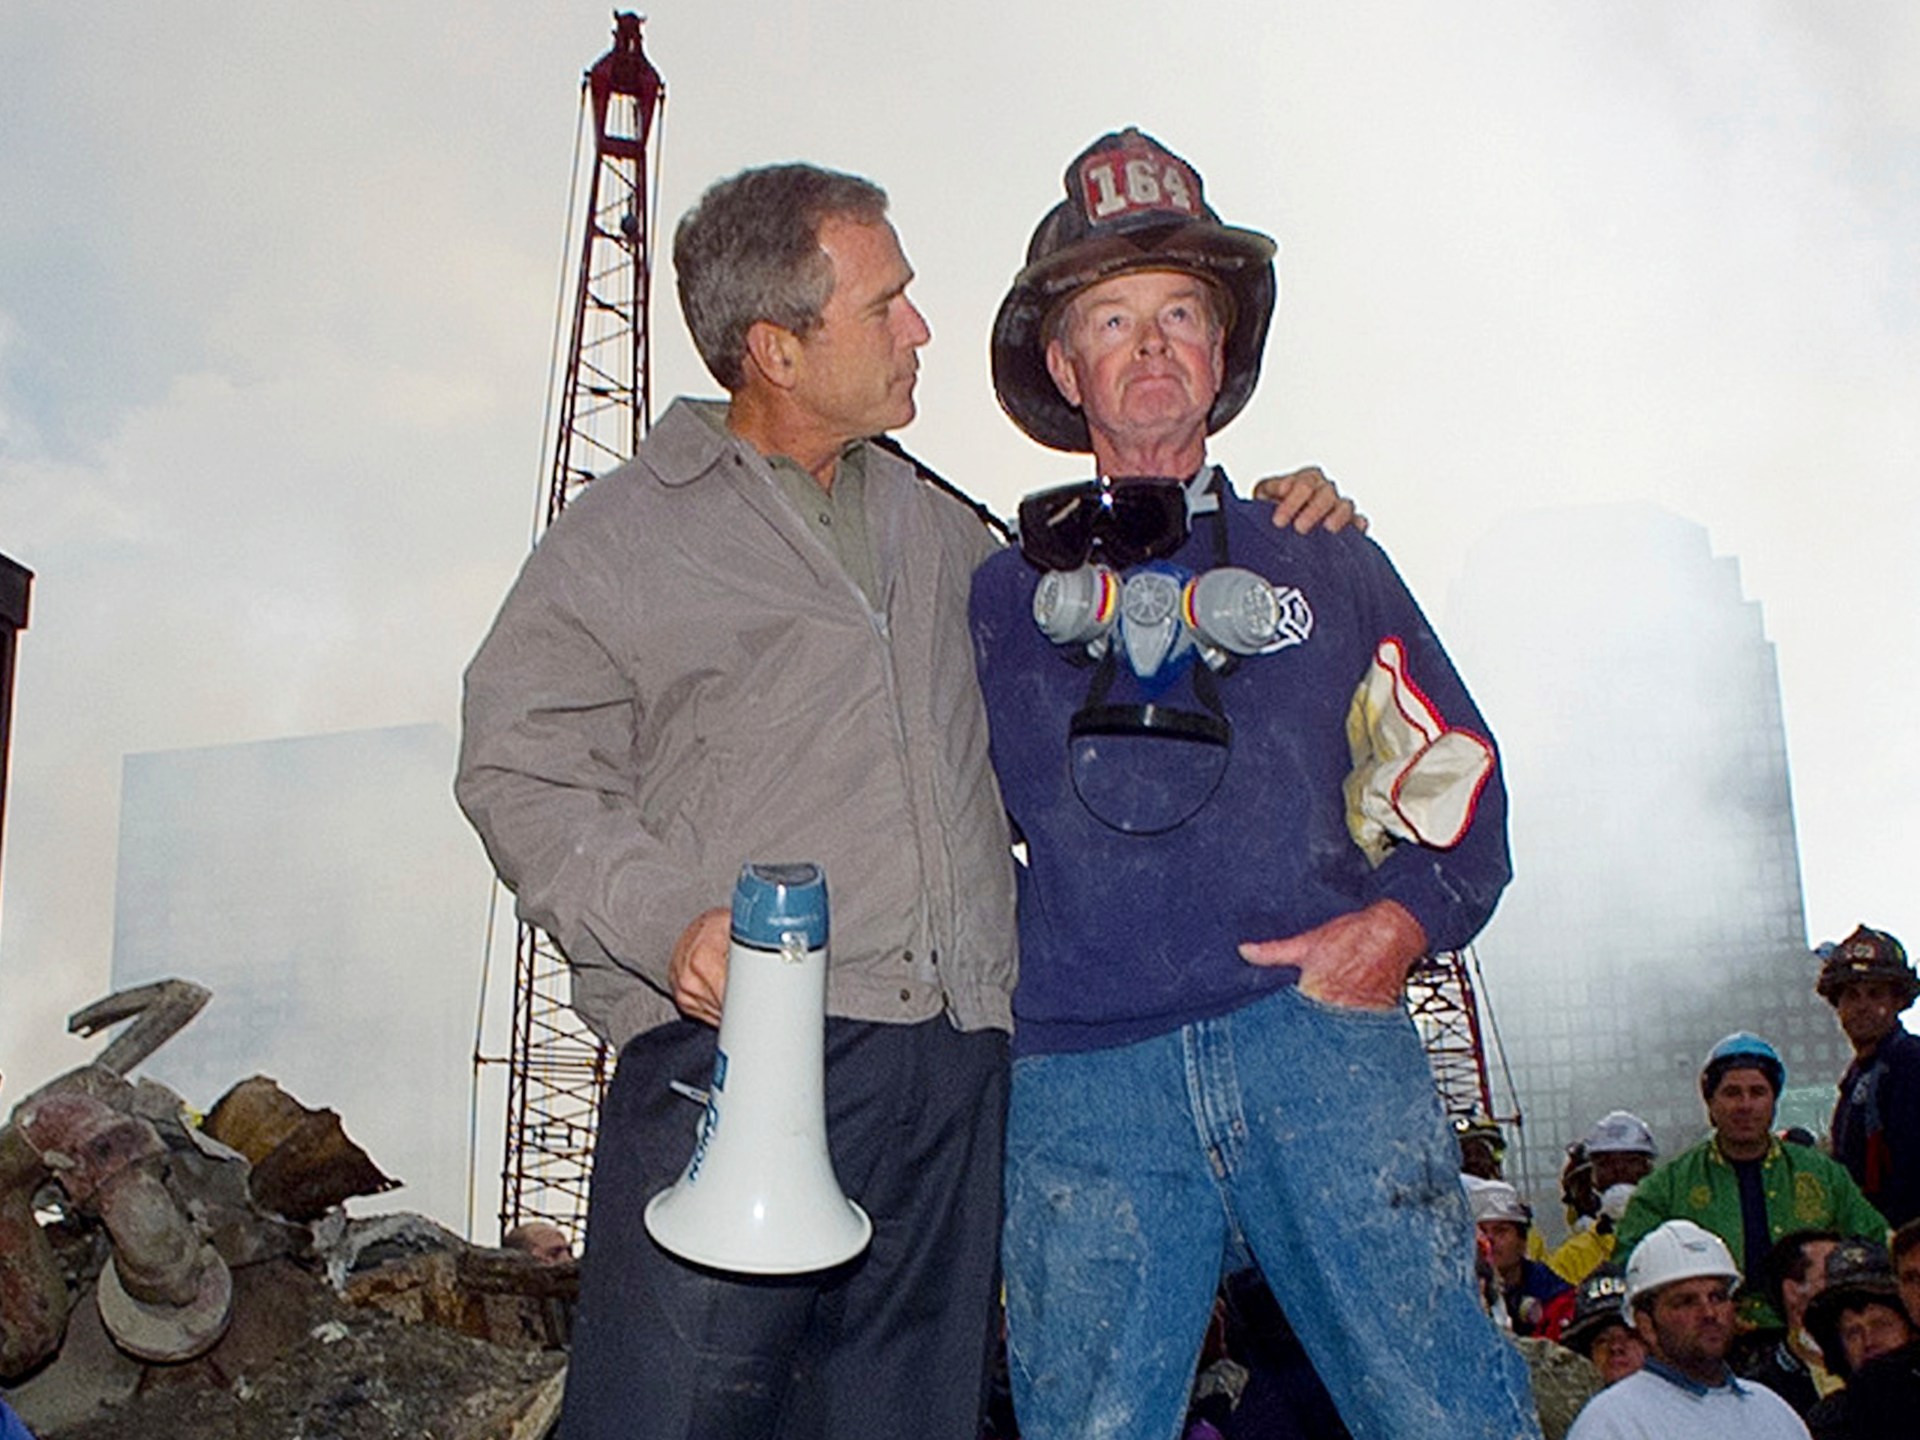 L'11 settembre muore il pompiere che stava accanto a Bush nelle famose foto  Notizia